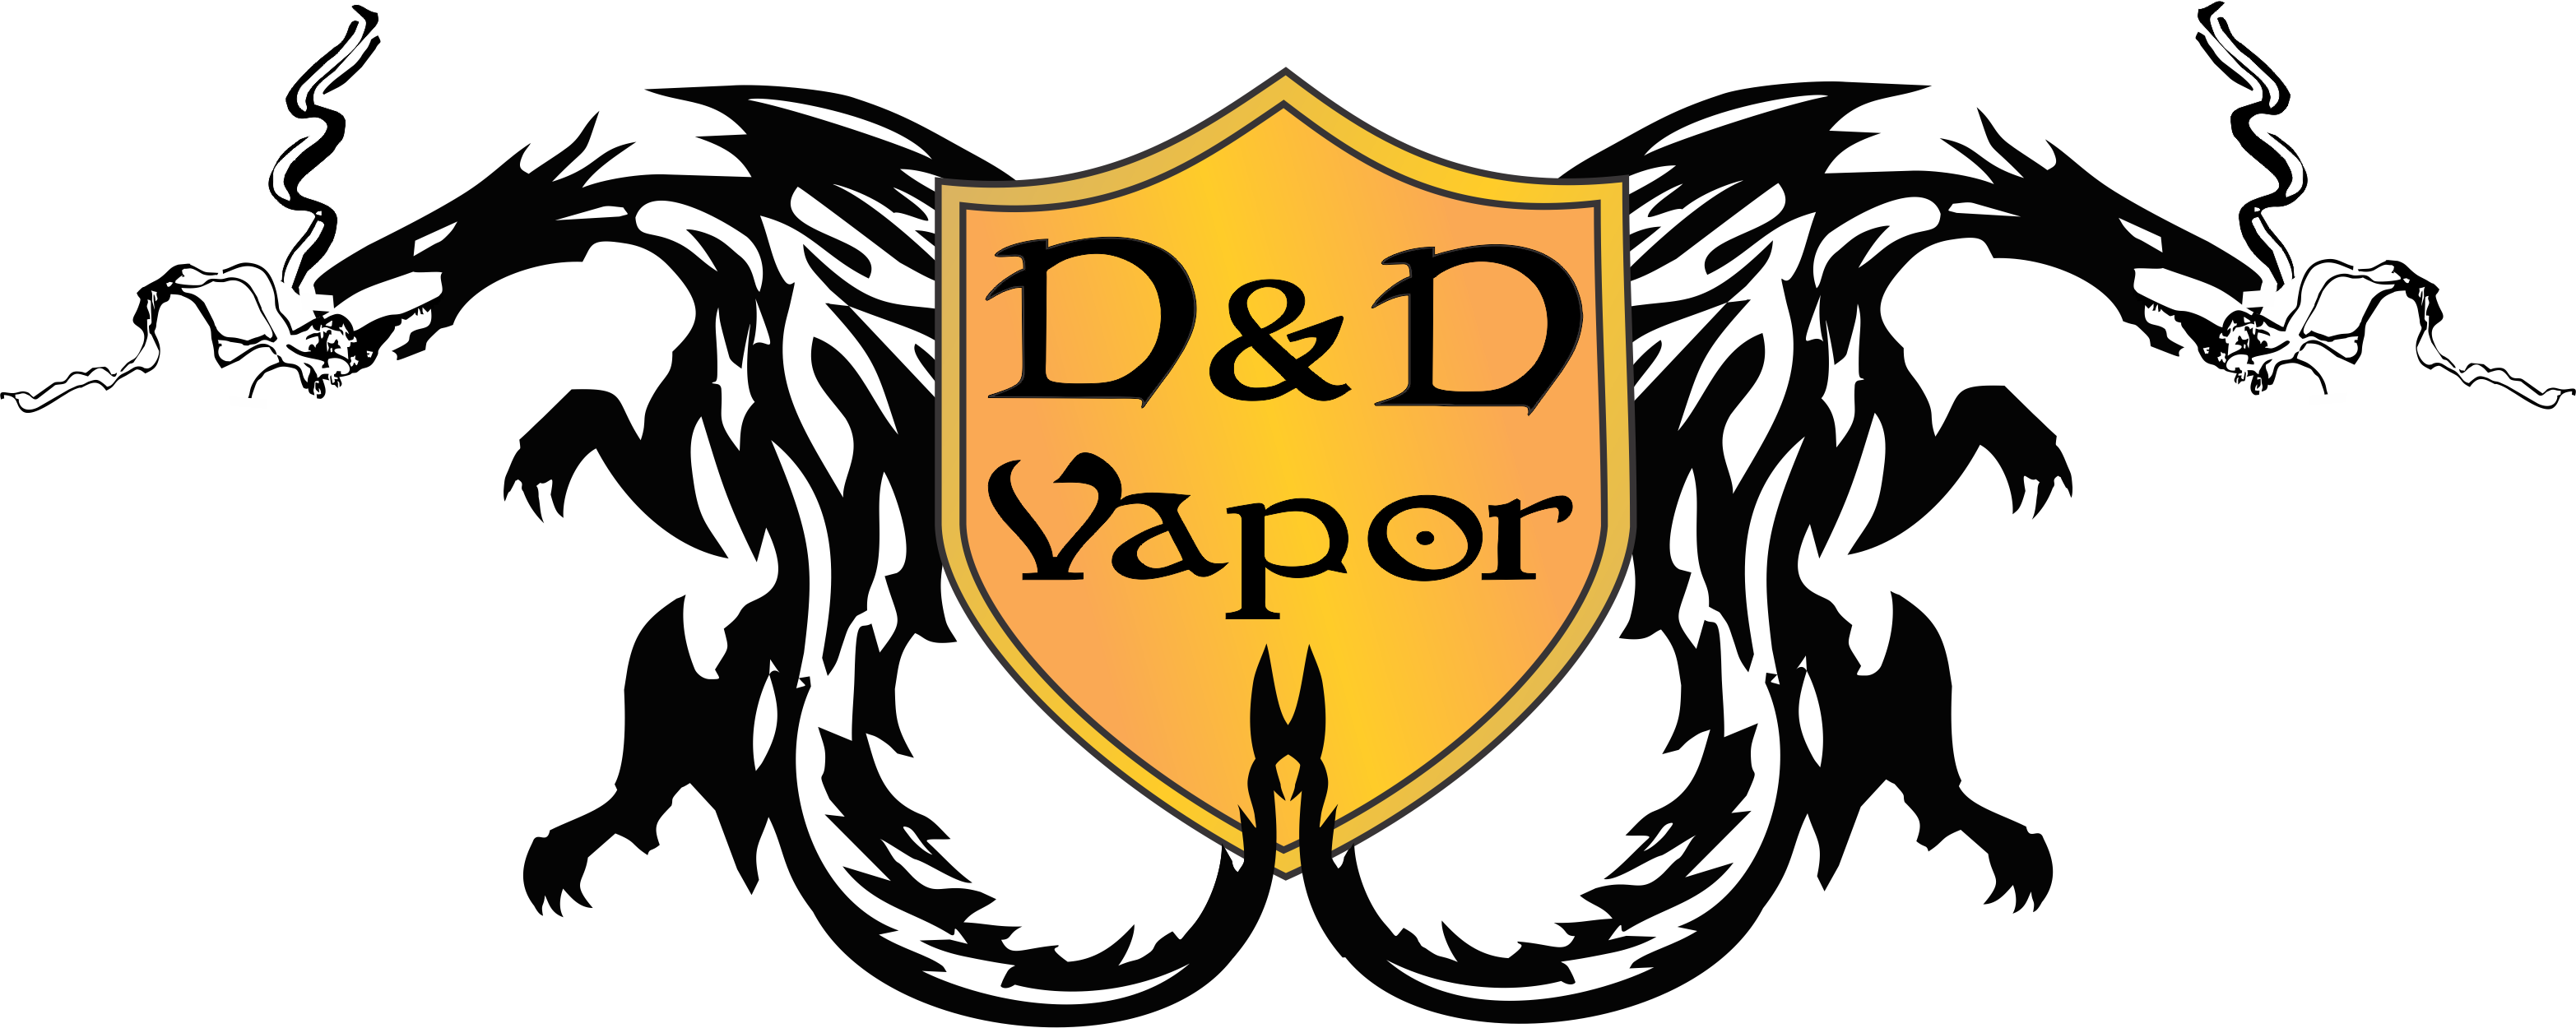 Welcome To D&d Vapor - Vapor (3131x1250)